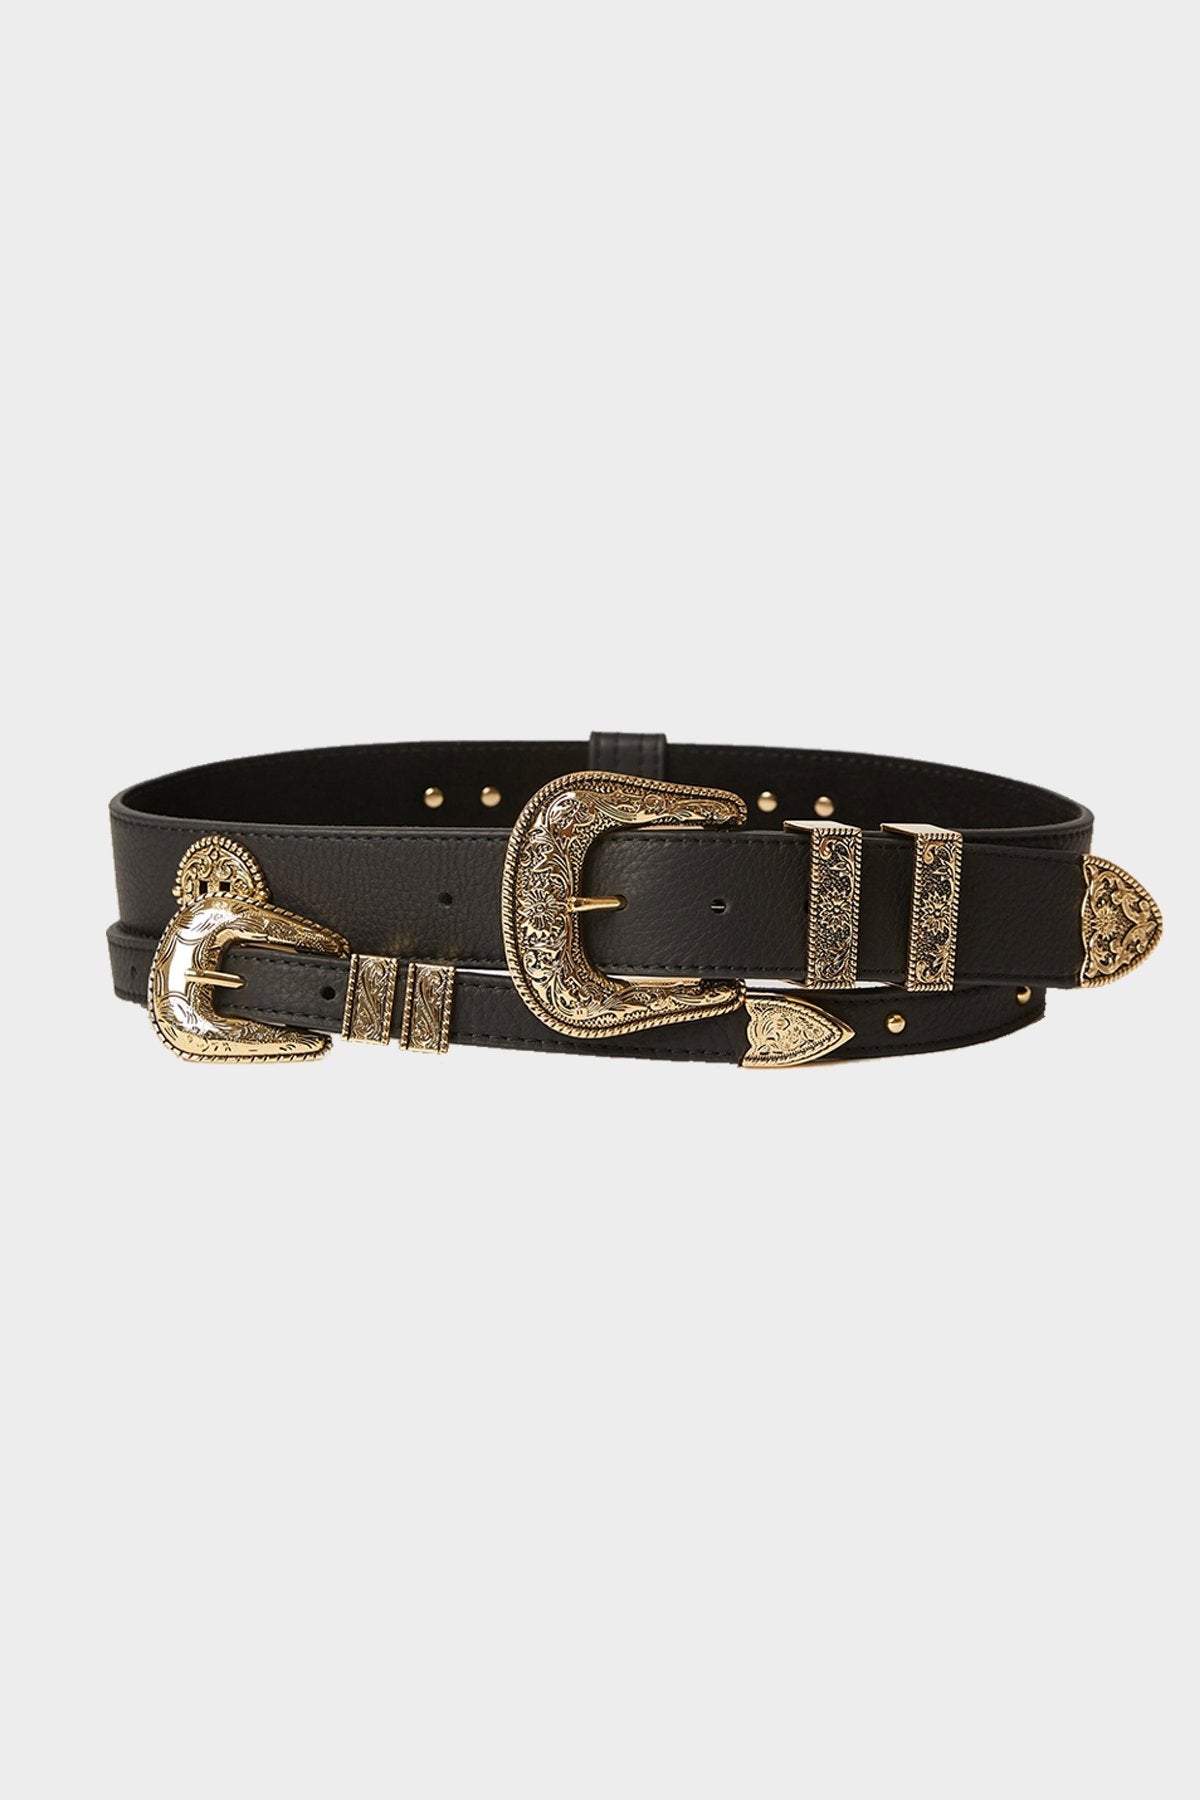 Wesley Leather Belt in Black Gold - shop-olivia.com